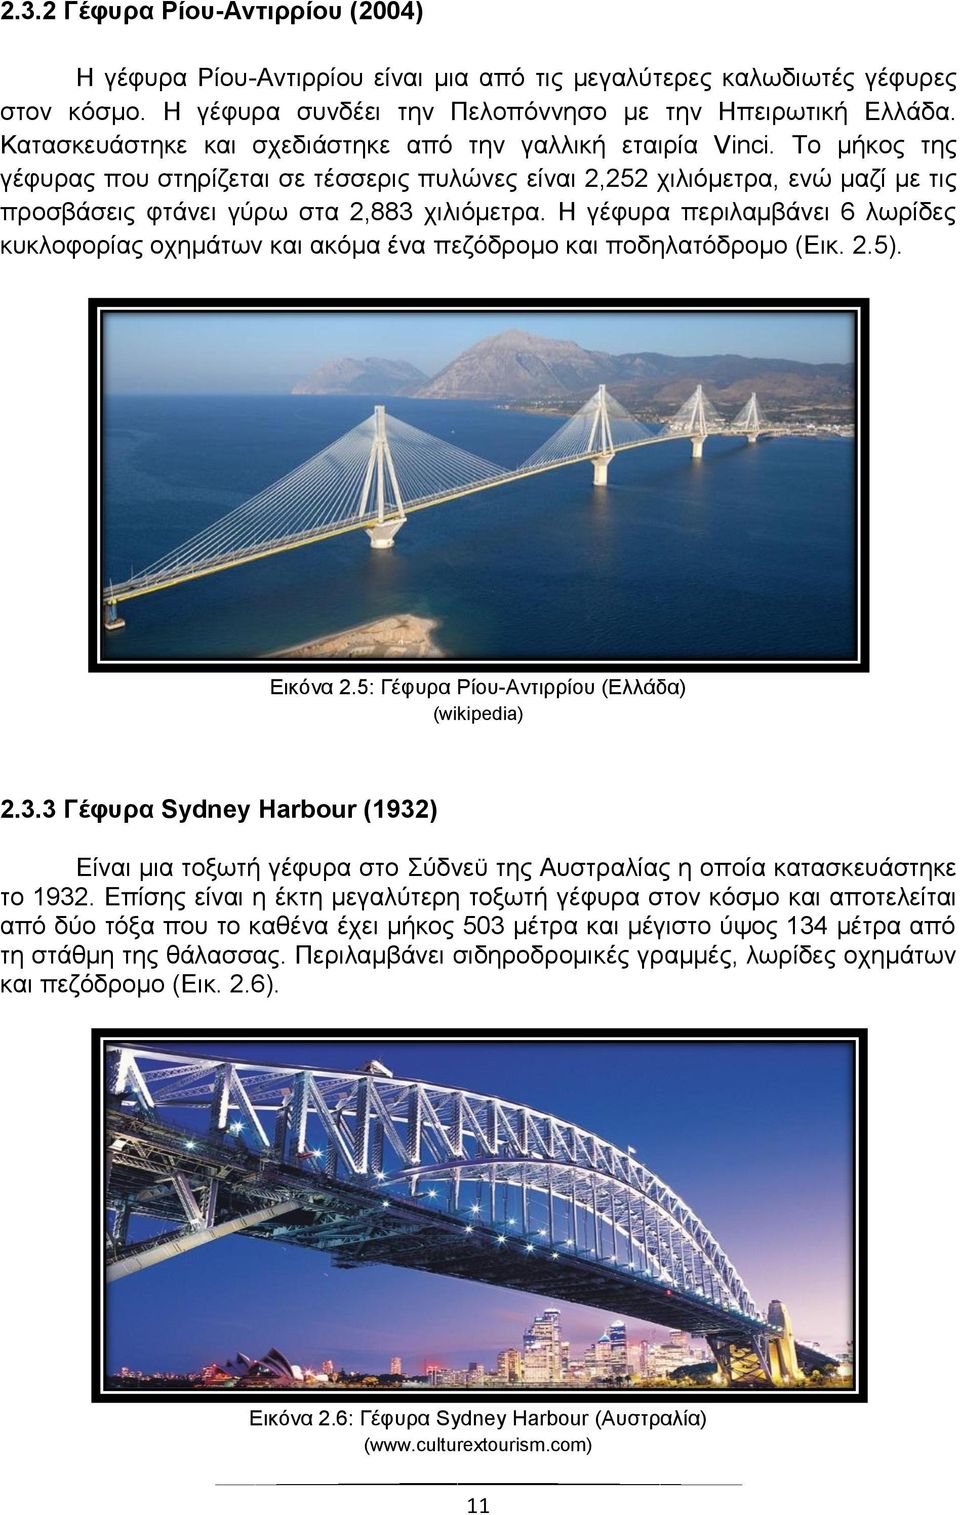 Η γέφυρα περιλαμβάνει λωρίδες κυκλοφορίας οχημάτων και ακόμα ένα πεζόδρομο και ποδηλατόδρομο (Εικ..5). Εικόνα.5: Γέφυρα Ρίου-Αντιρρίου (Ελλάδα) (wikipedi).